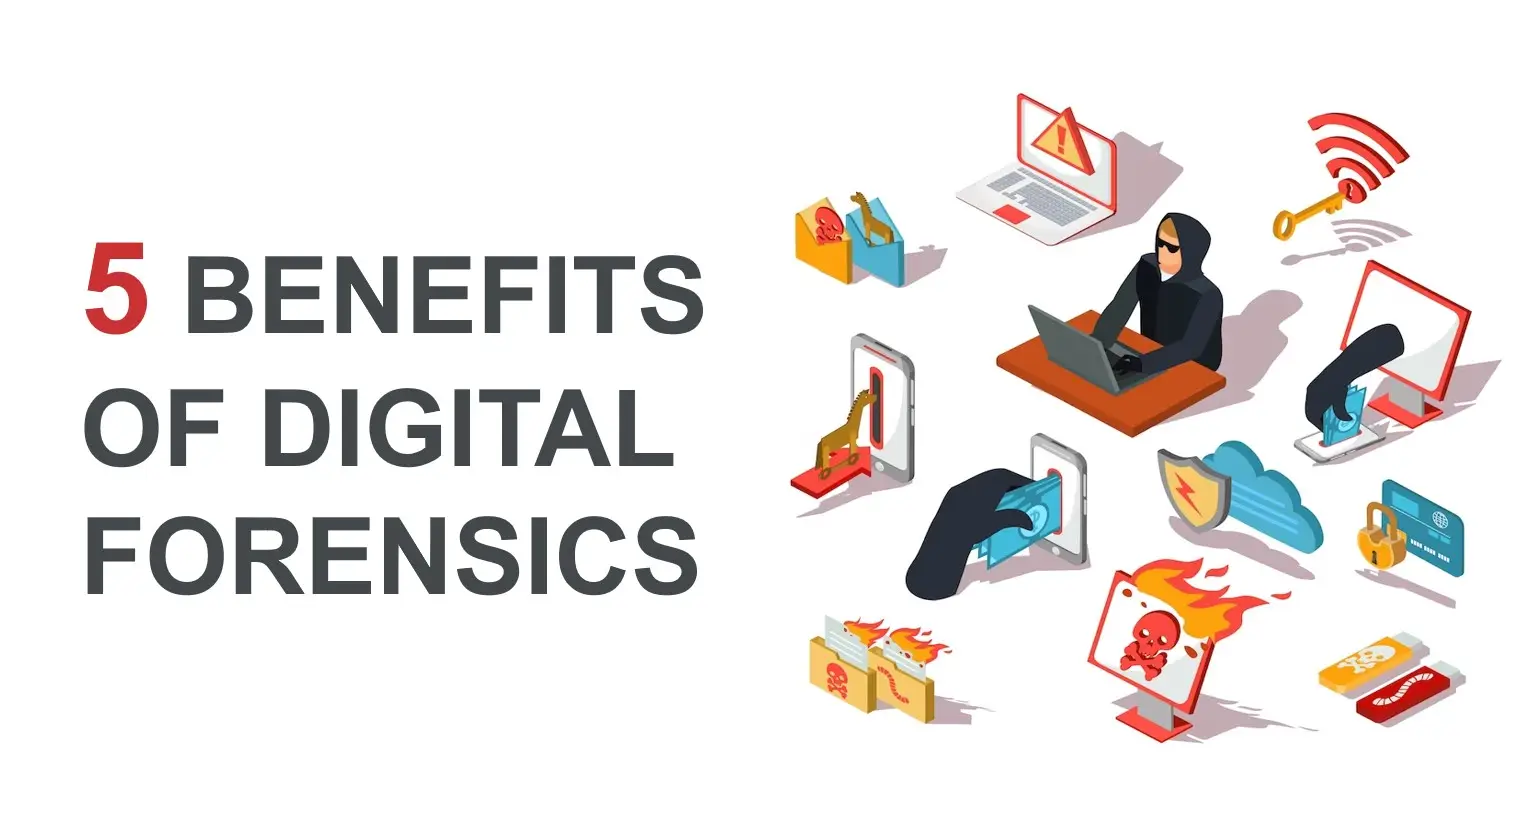 5 Benefits of Digital Forensics